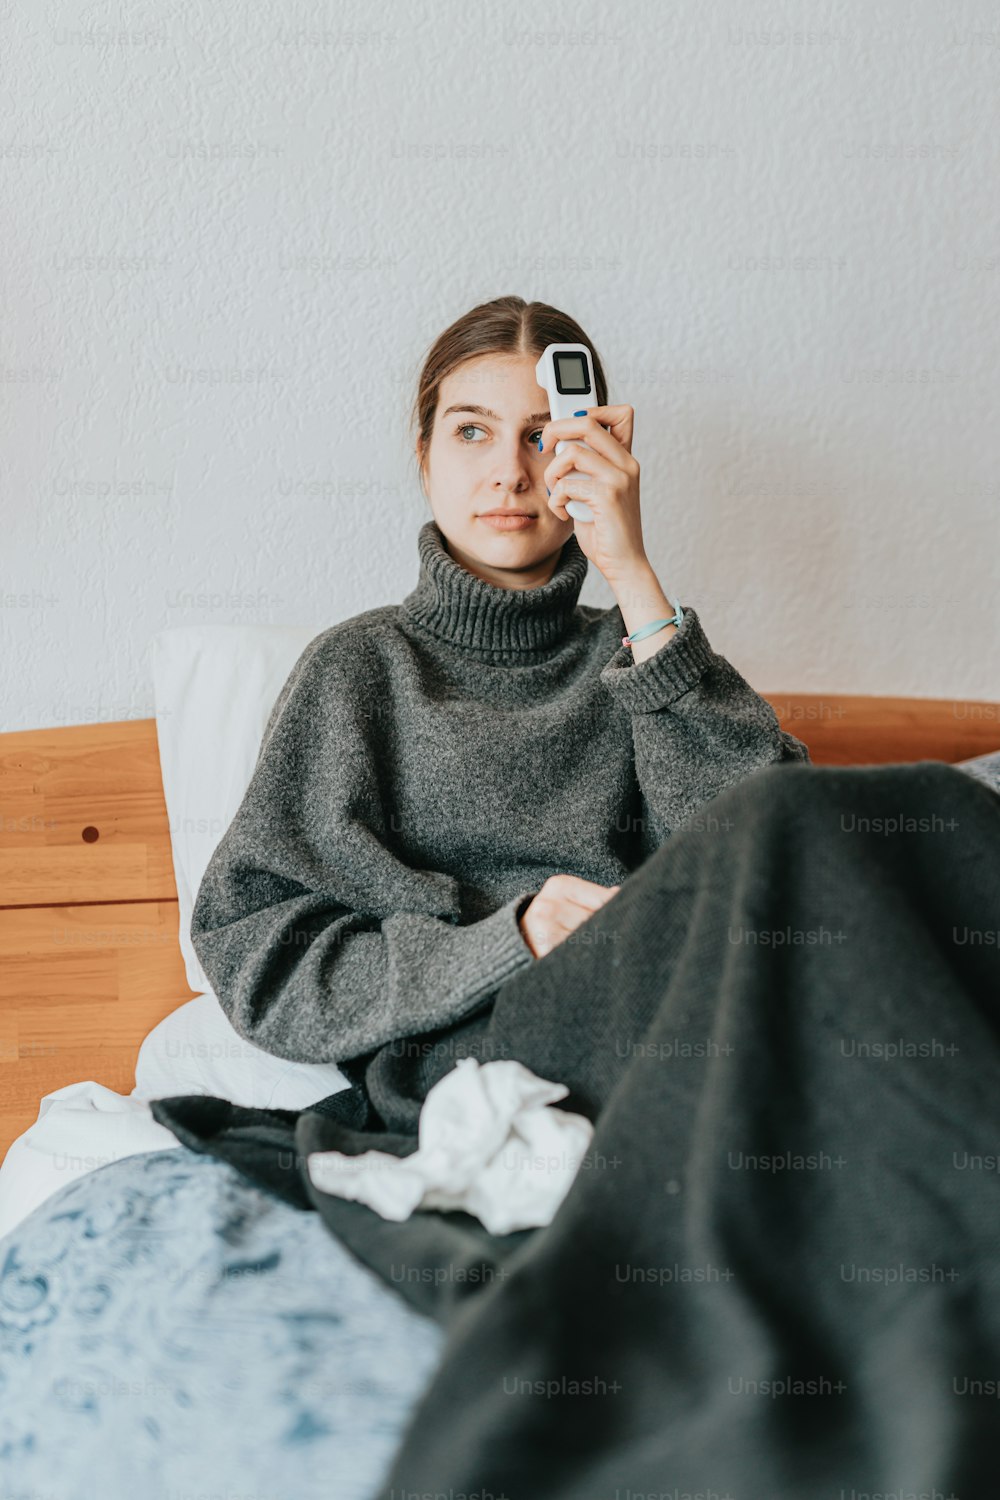 Una mujer sentada en una cama sosteniendo un teléfono celular